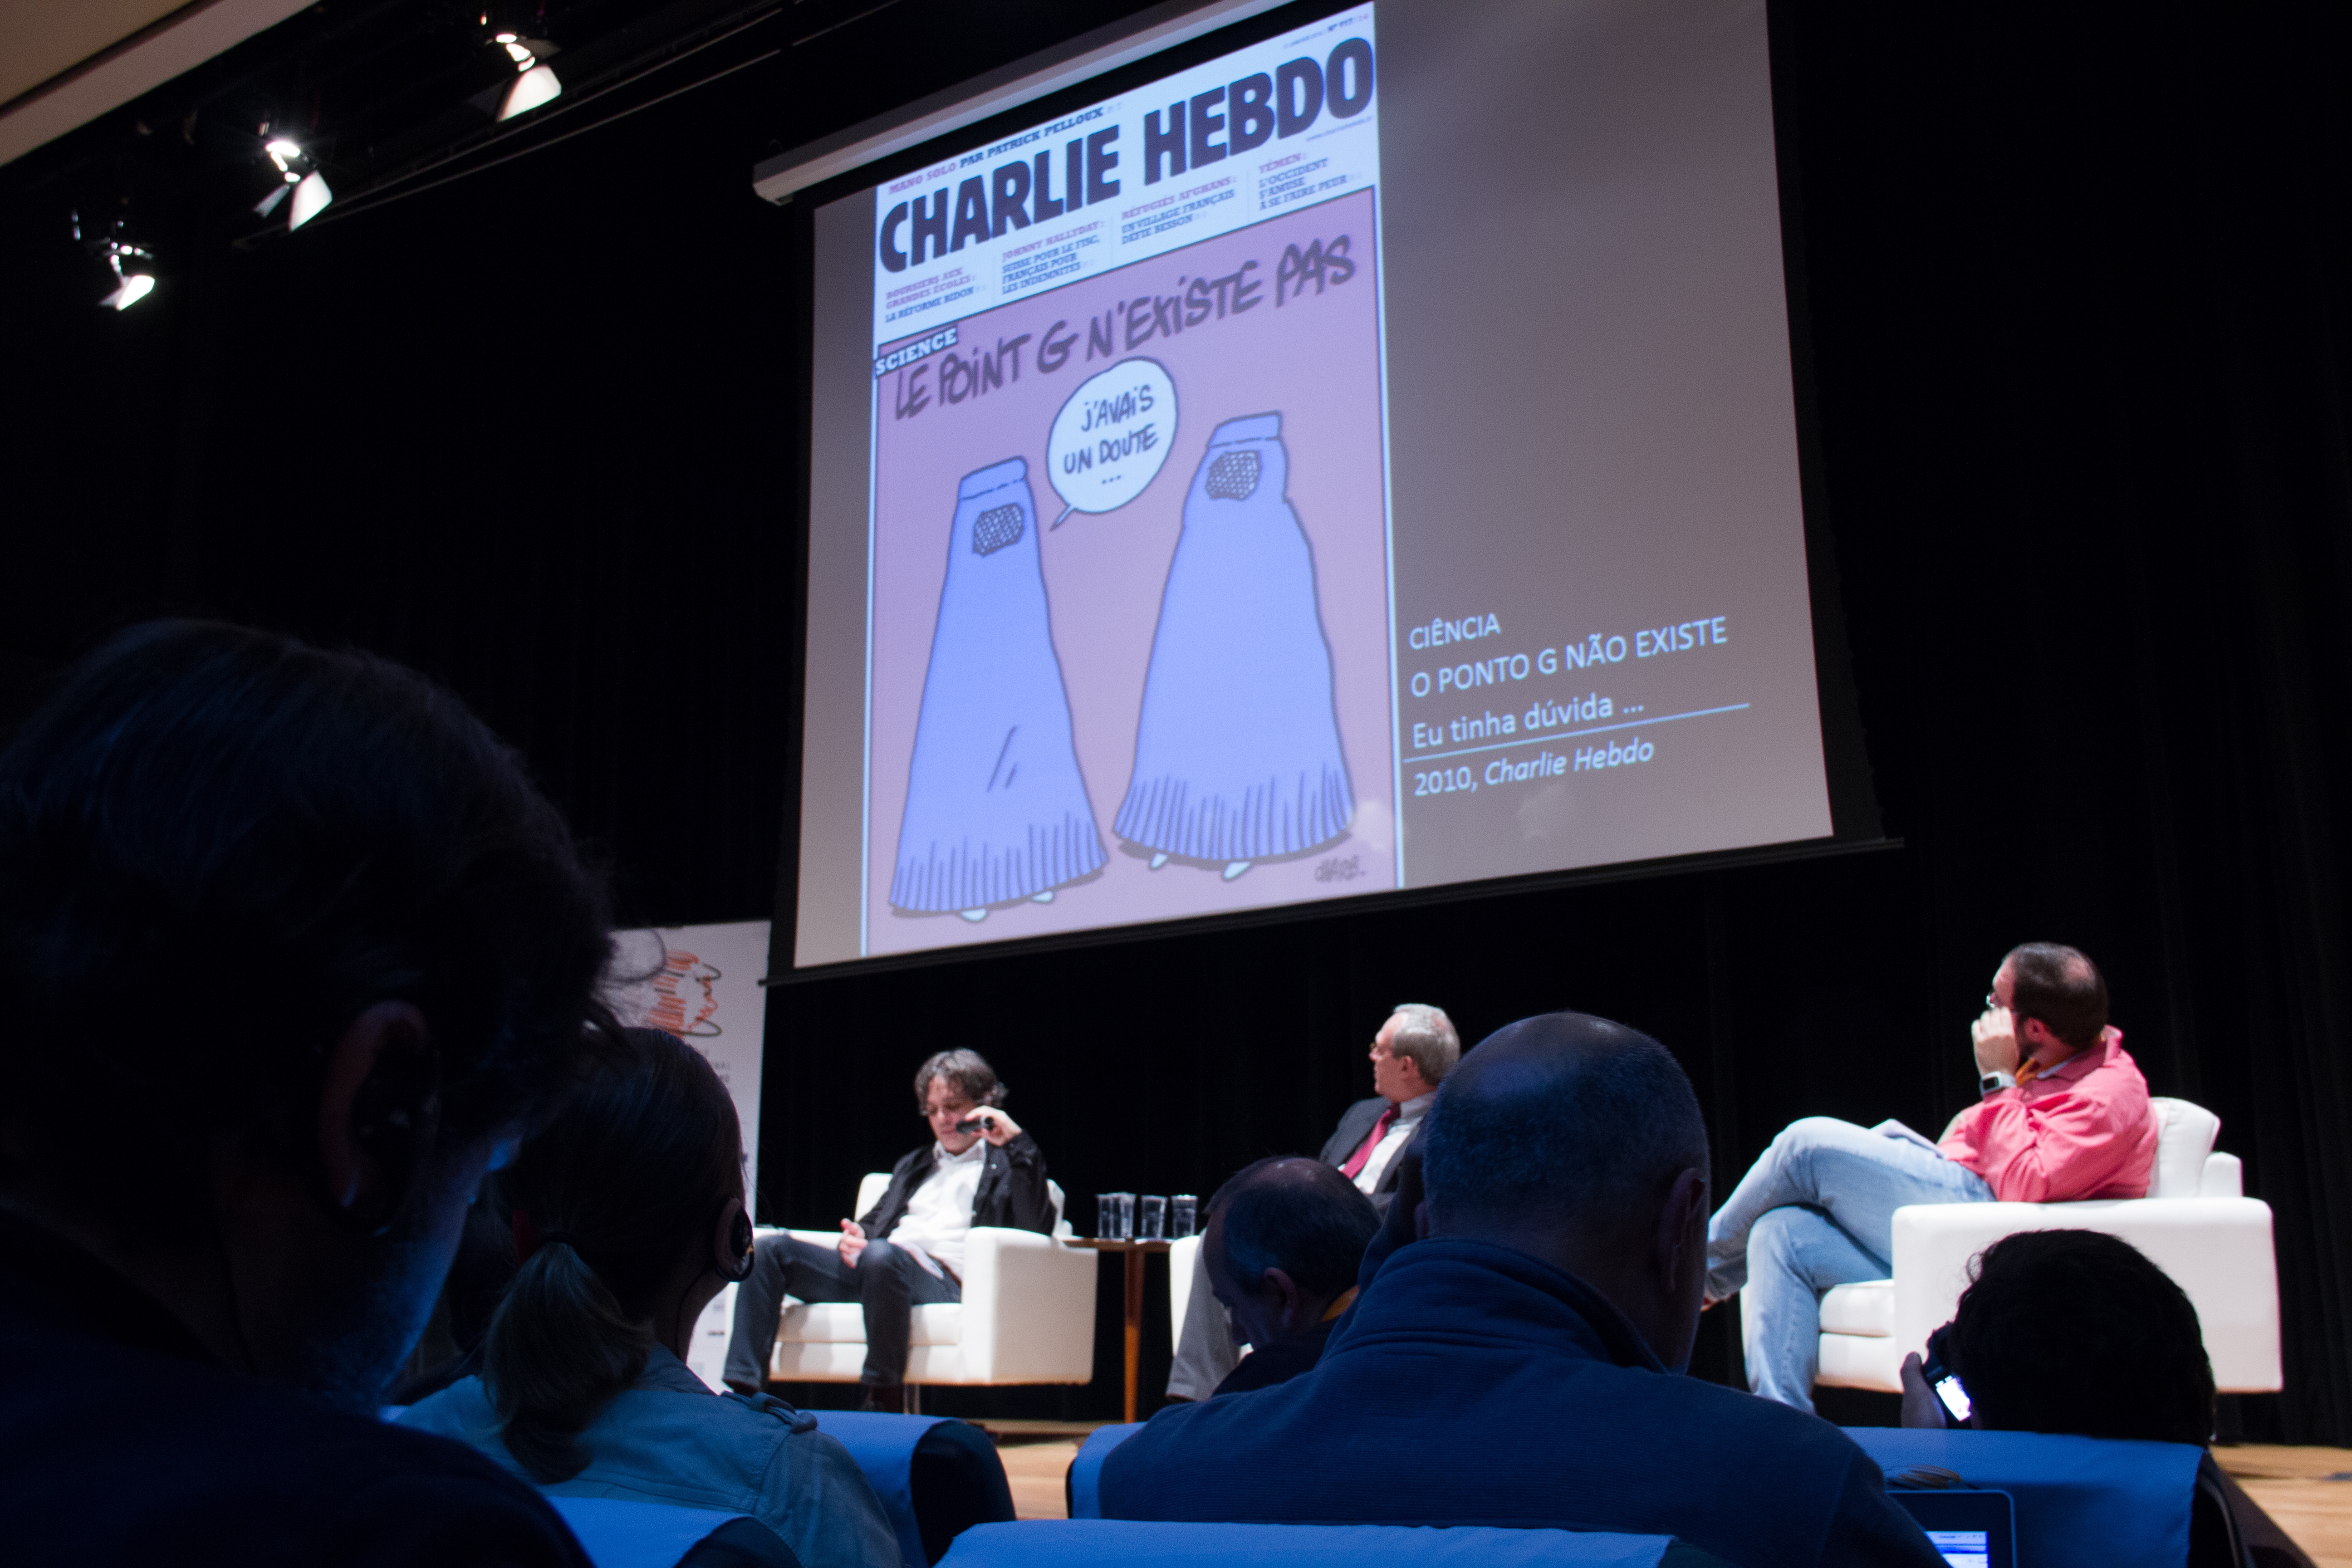  La censura “fue privatizada” y ahora proviene de la sociedad civil, advierte director de Charlie Hebdo